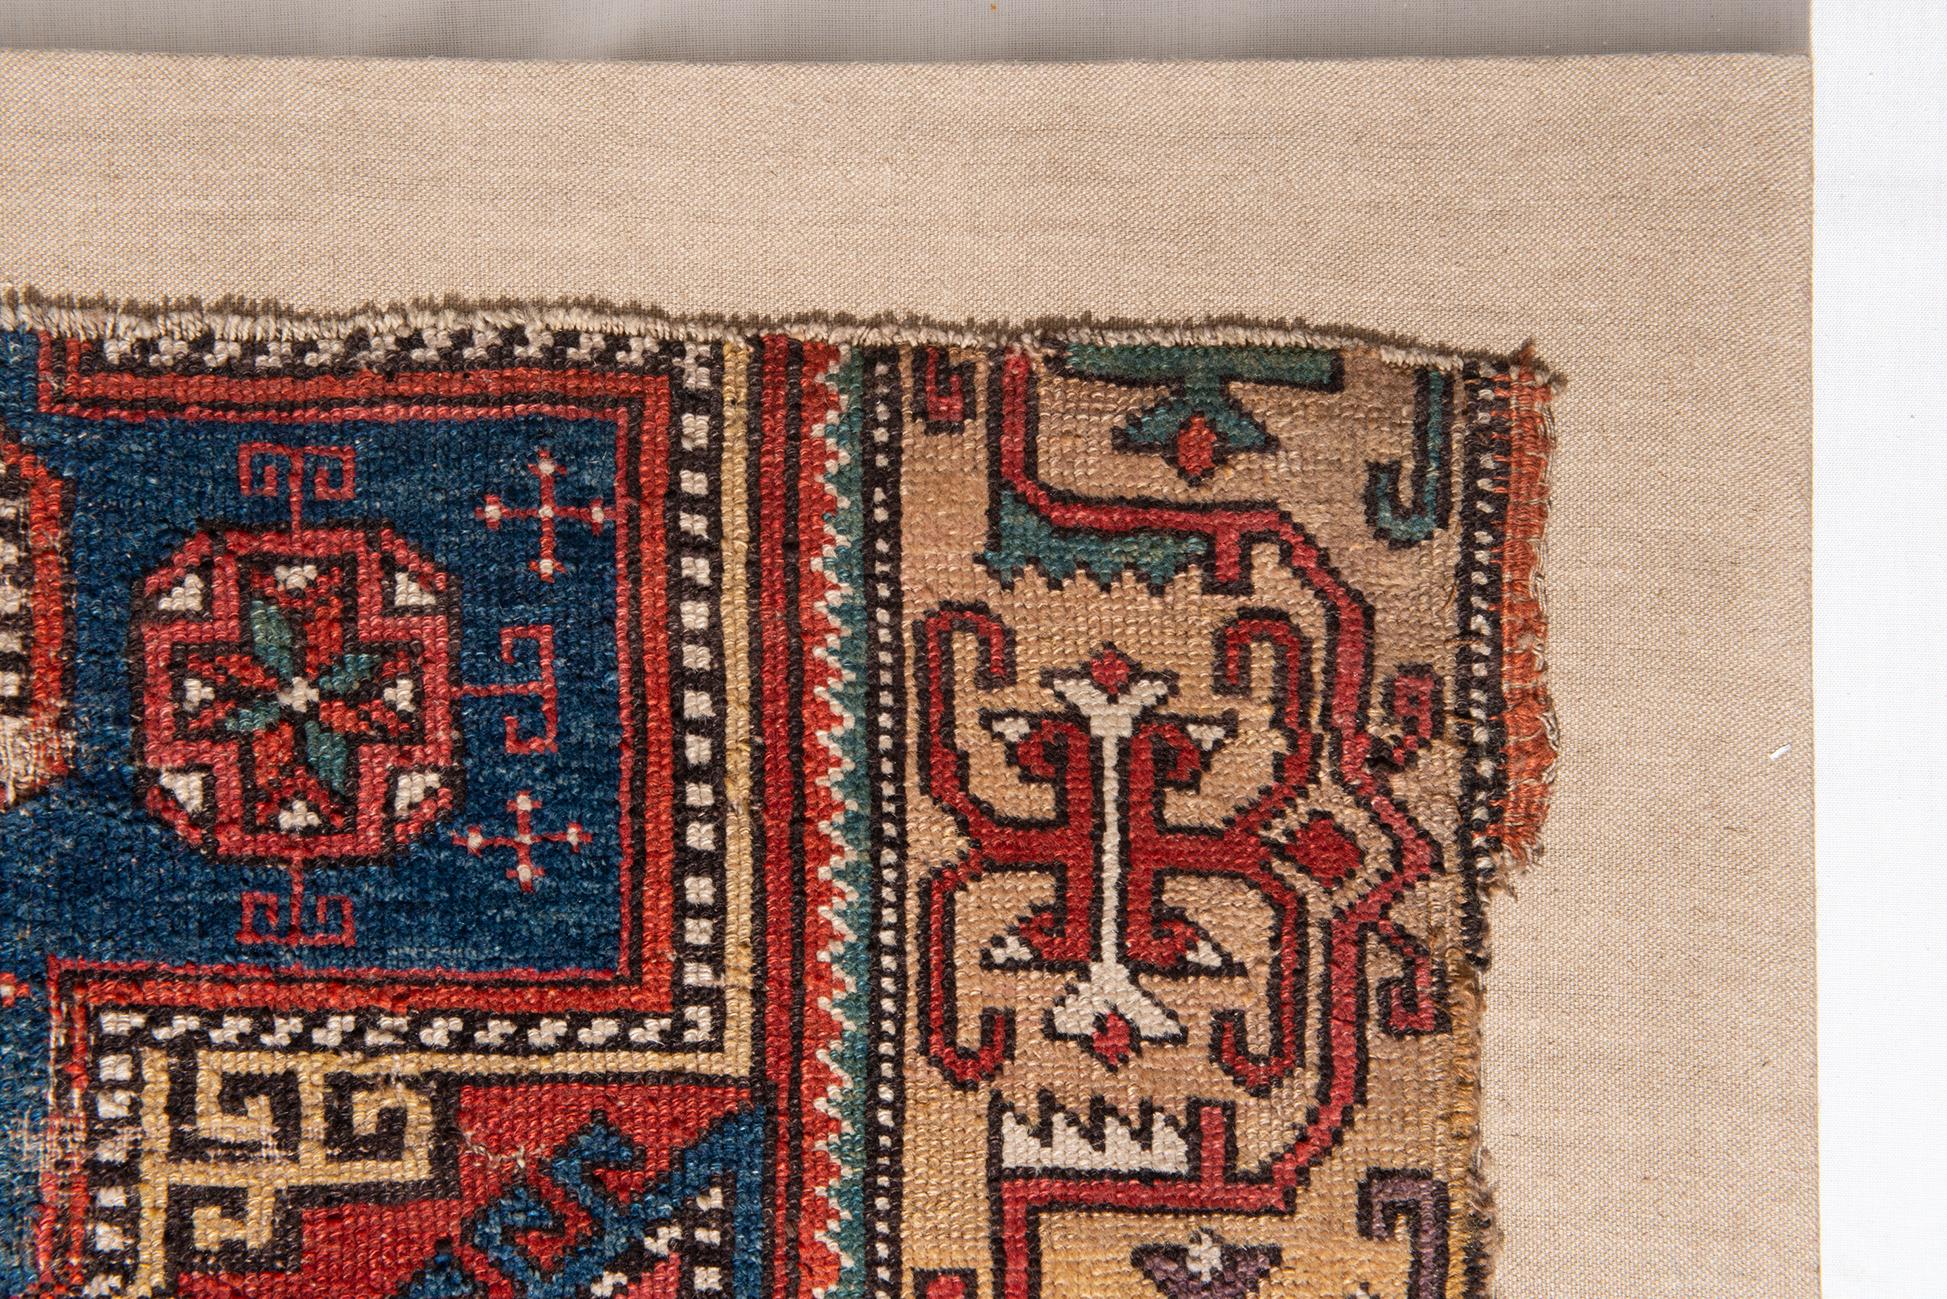 Other Fragment of Antique Konya Carpet For Sale